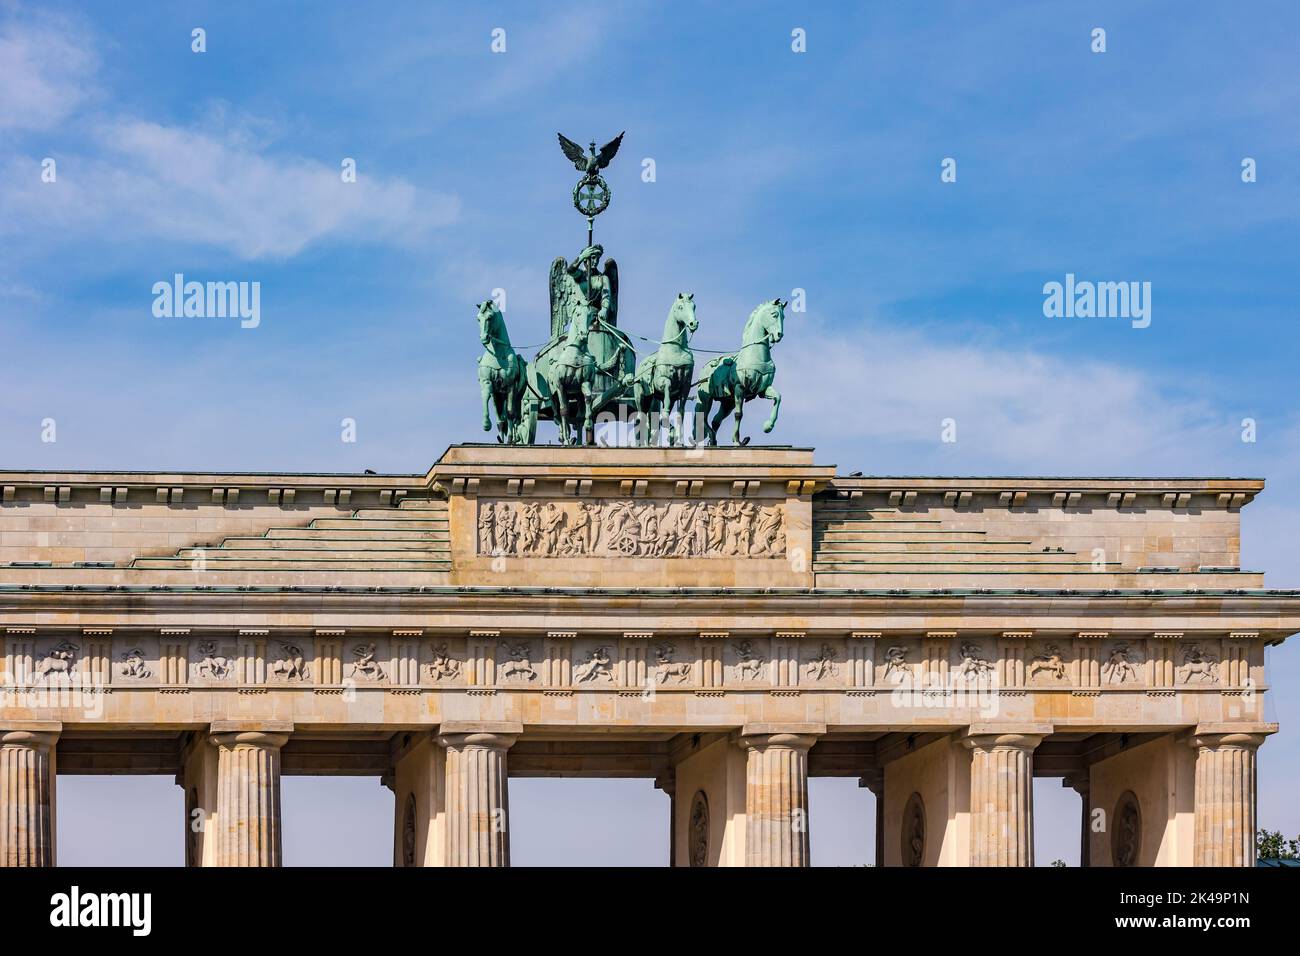 El equipo de caballos de la Quadriga en la Puerta de Brandenburgo en Berlín contra el cielo azul es un símbolo nacional de la unidad alemana Foto de stock